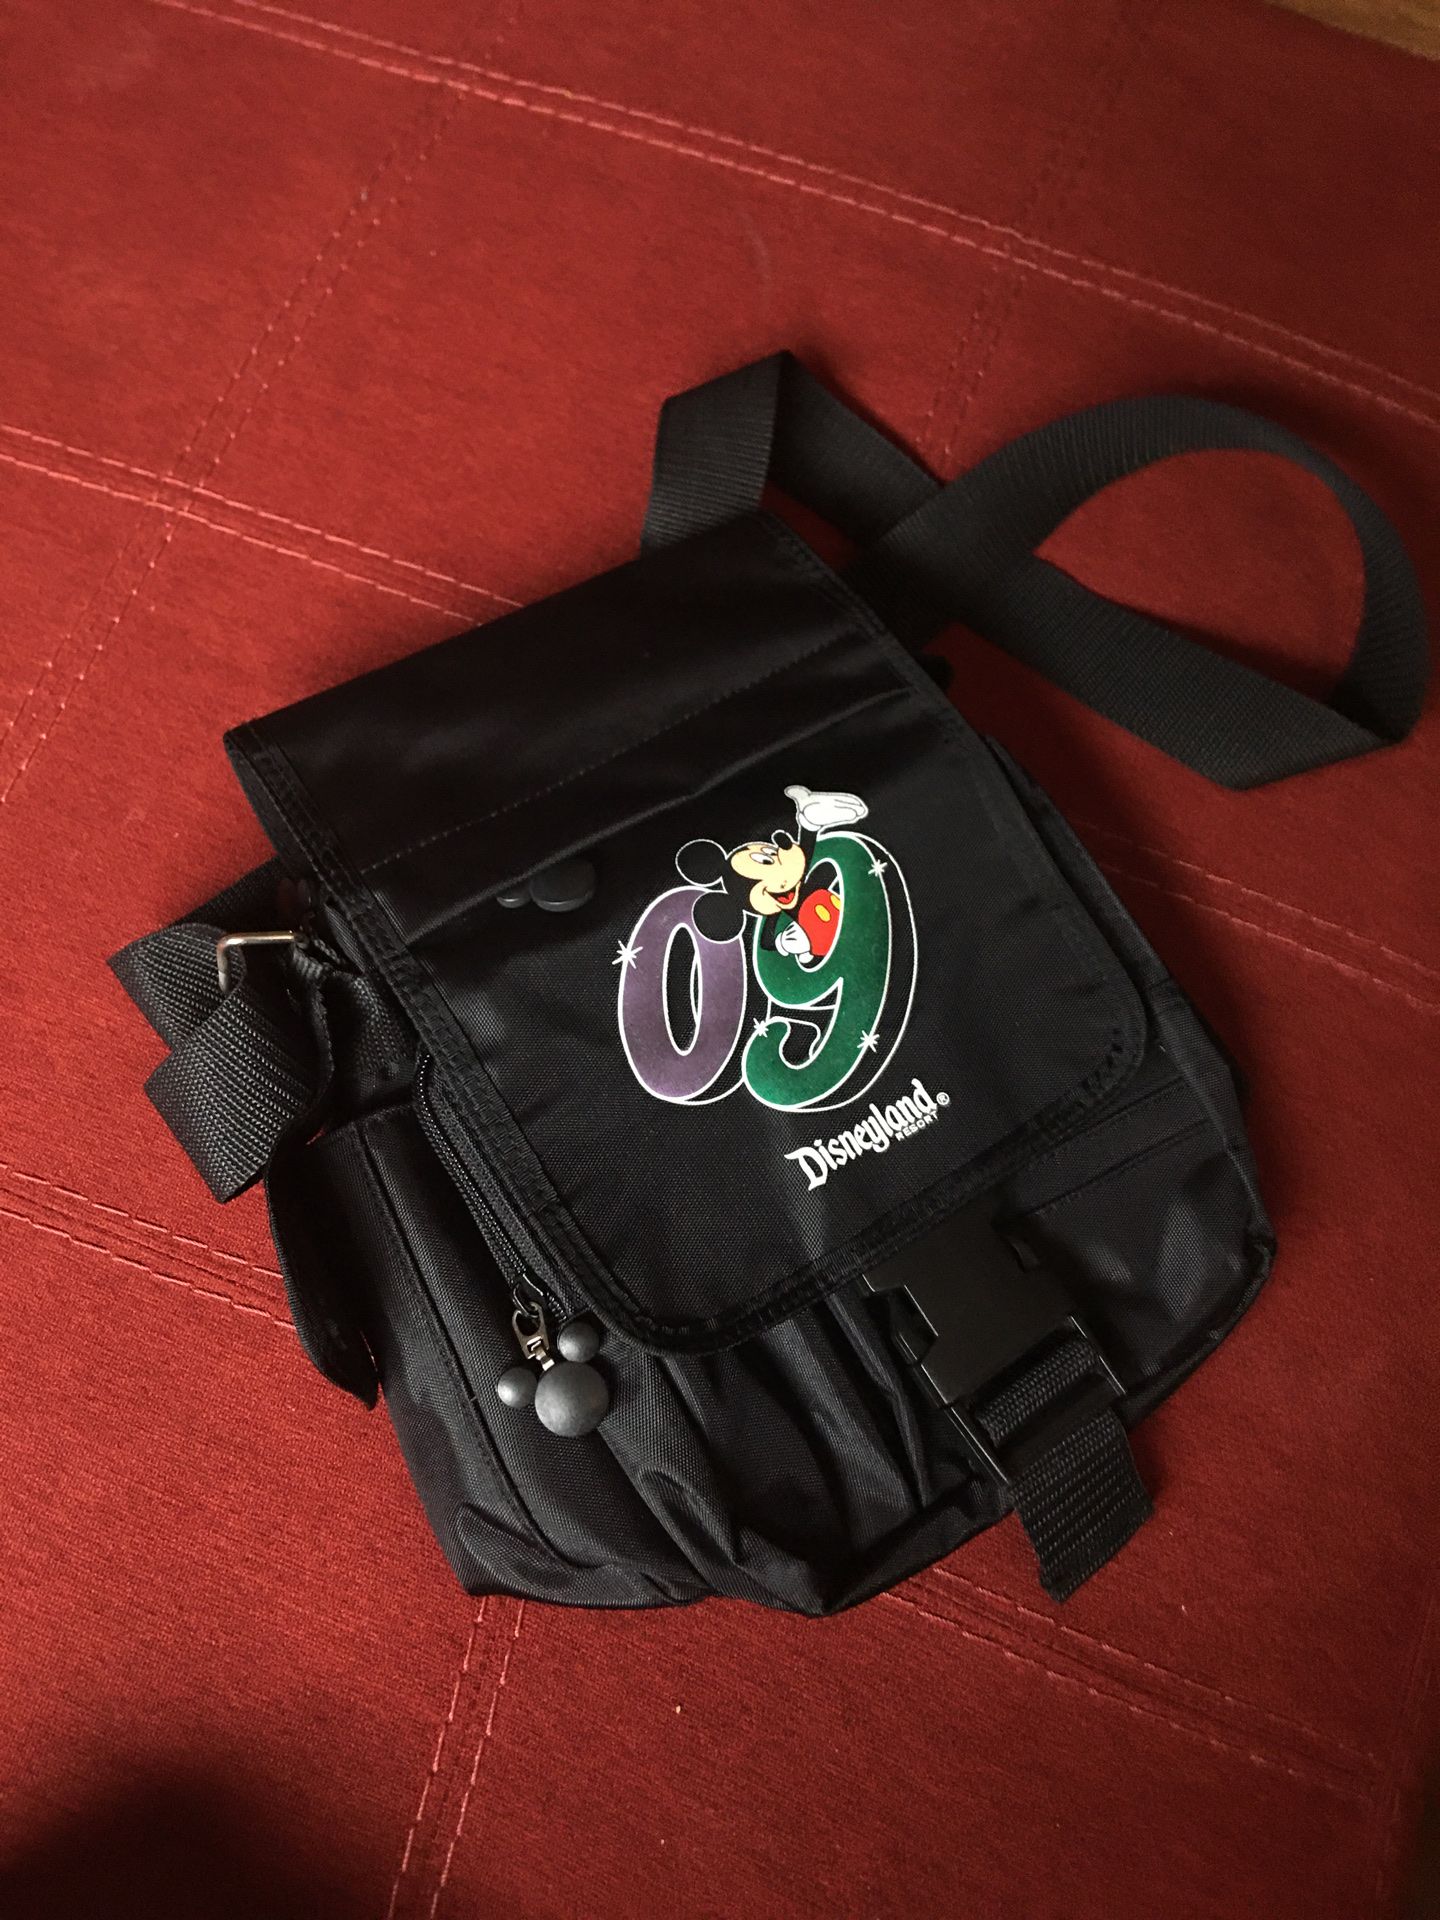 09 Disneyland Shoulder Bag